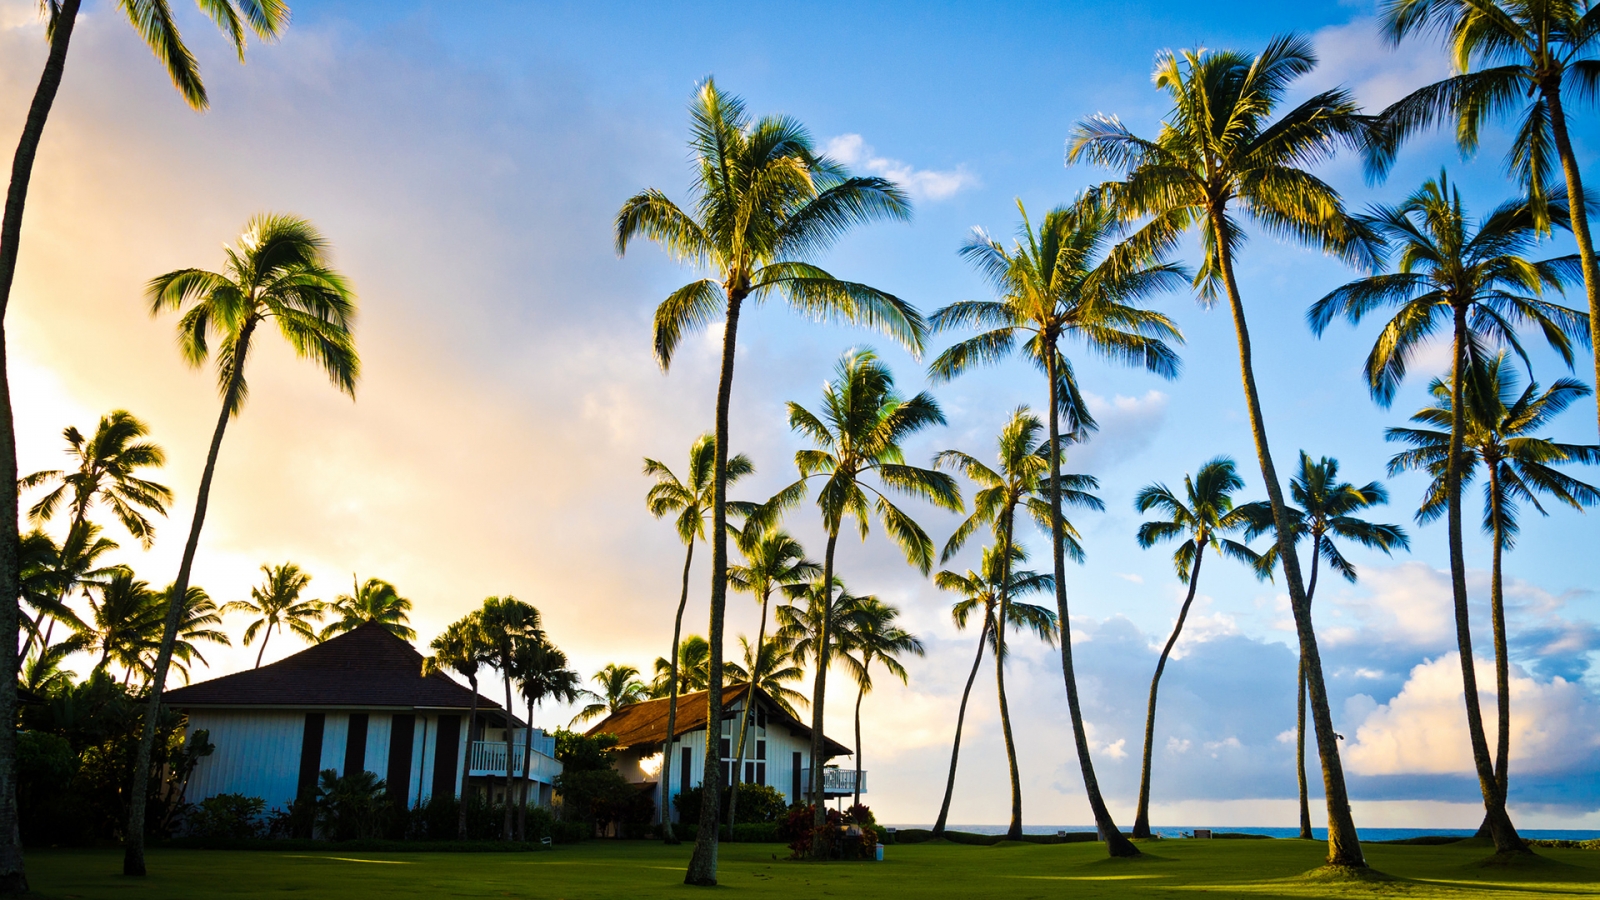 Hawaii Beach Houses for 1600 x 900 HDTV resolution